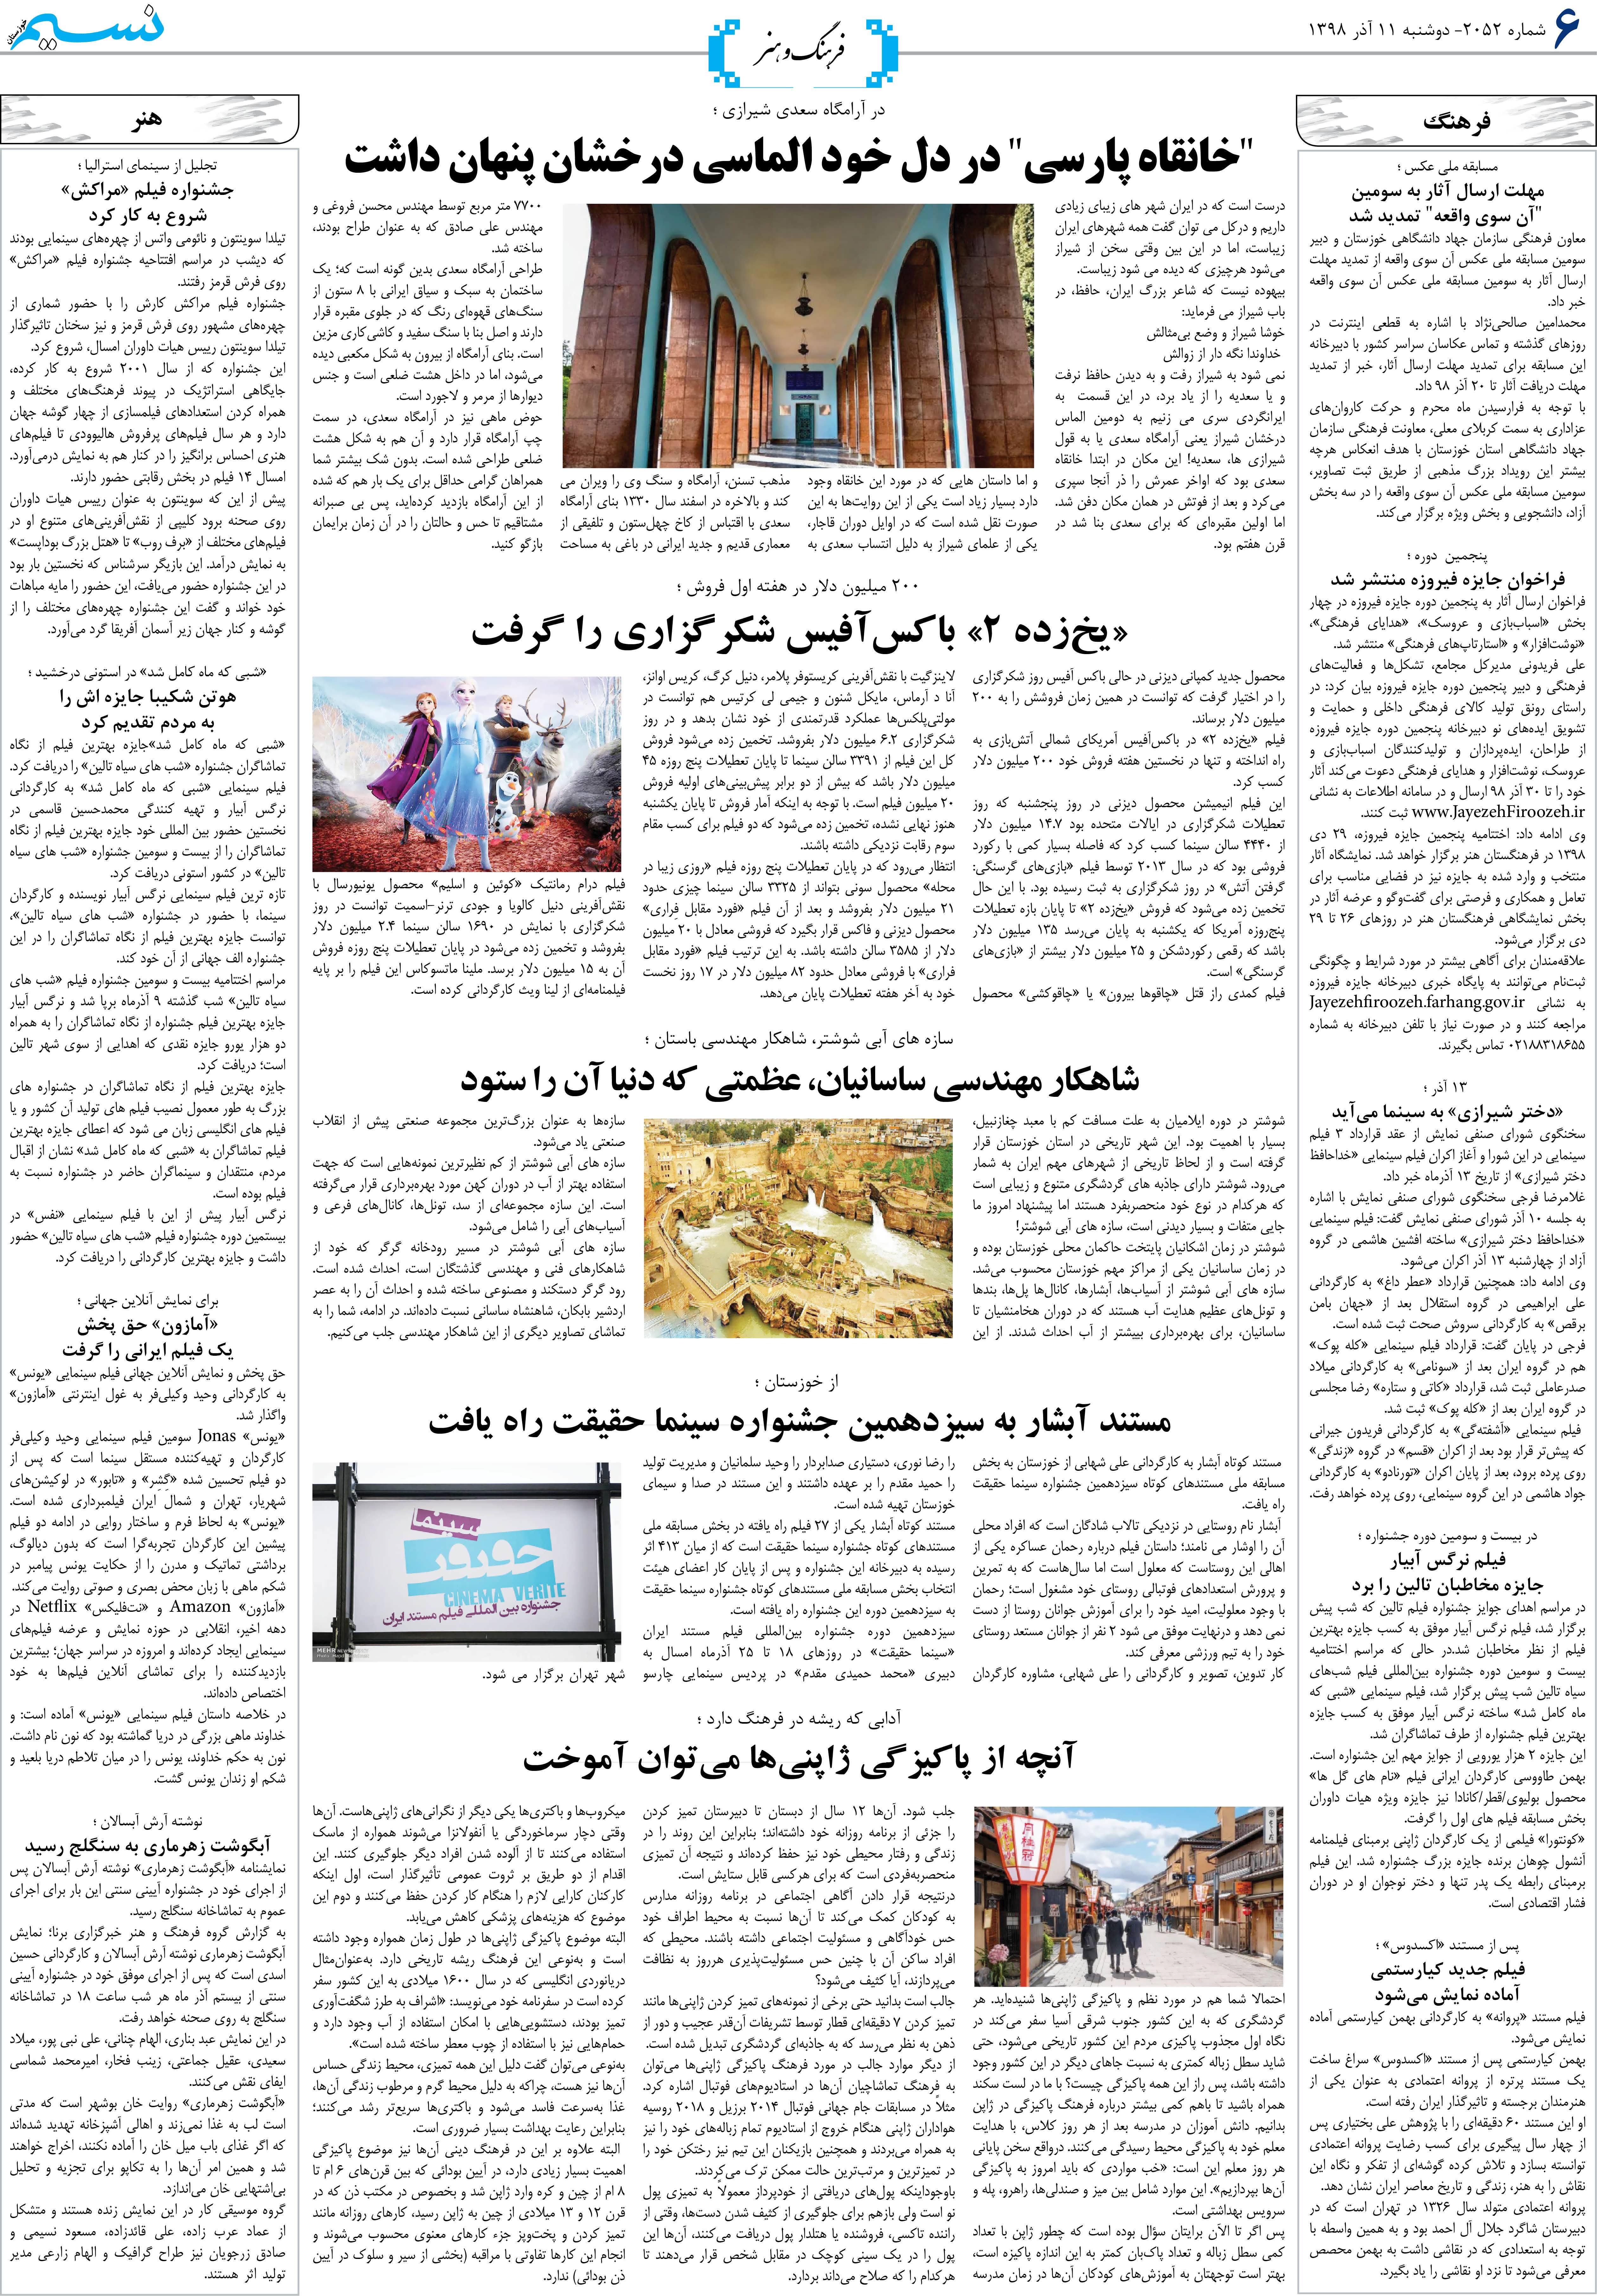 صفحه فرهنگ و هنر روزنامه نسیم شماره 2052